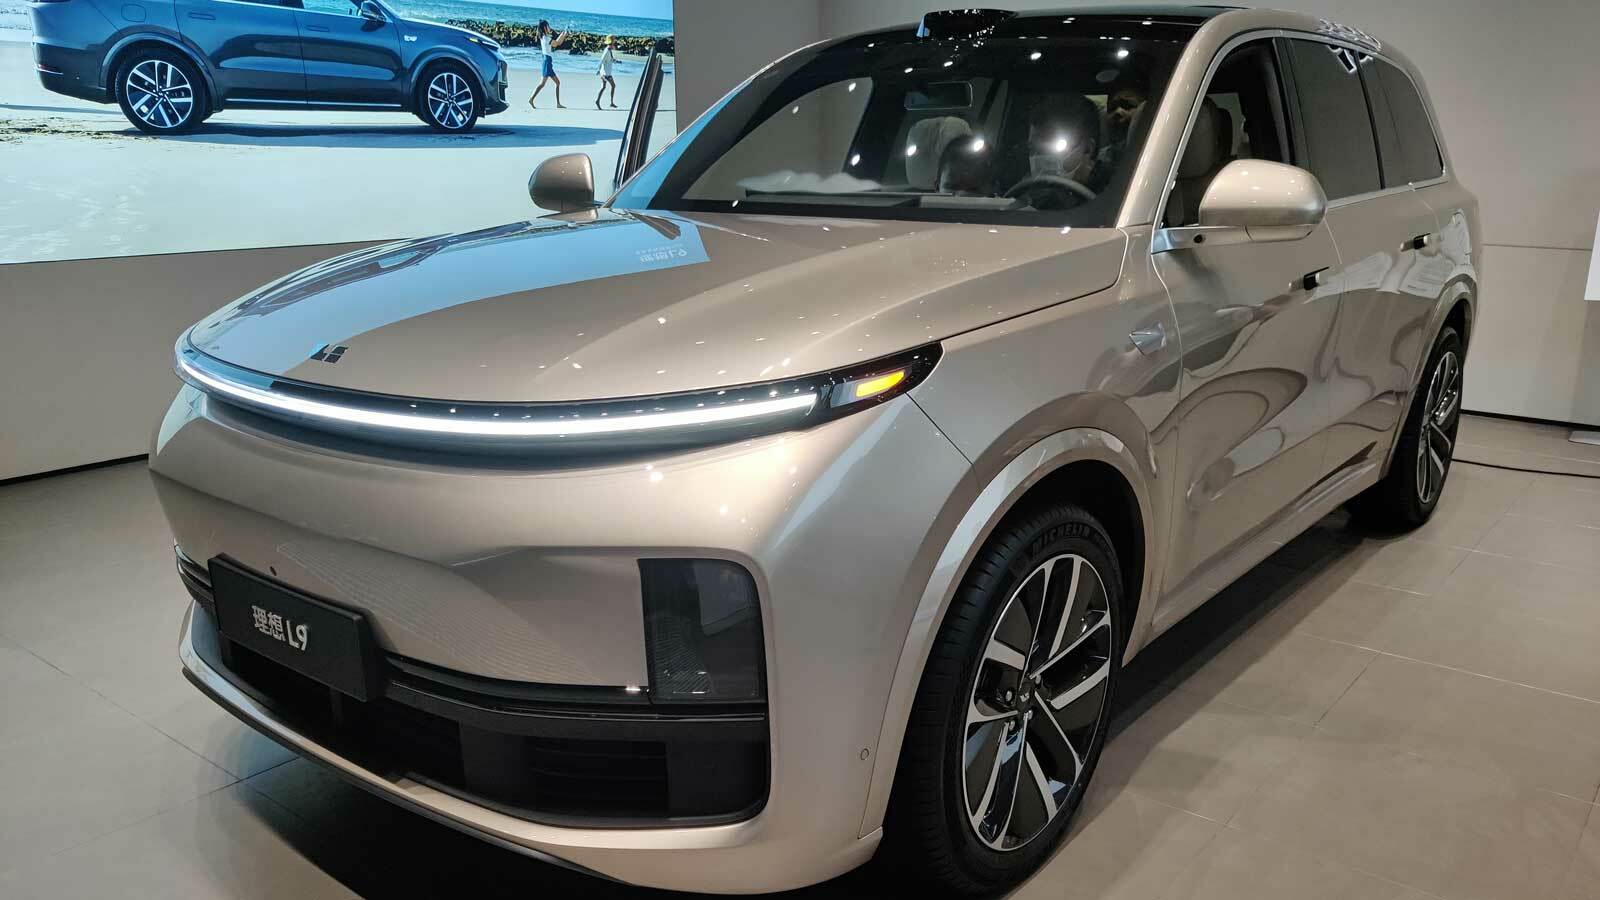 Ein silberner Li Auto L9, auch bekannt als Lixiang L9, in Frontansicht. Dieses Elektrofahrzeug kombiniert elegantes Design mit der neuesten Technologie, gekennzeichnet durch seine markante silberne Lackierung und das futuristische Erscheinungsbild.